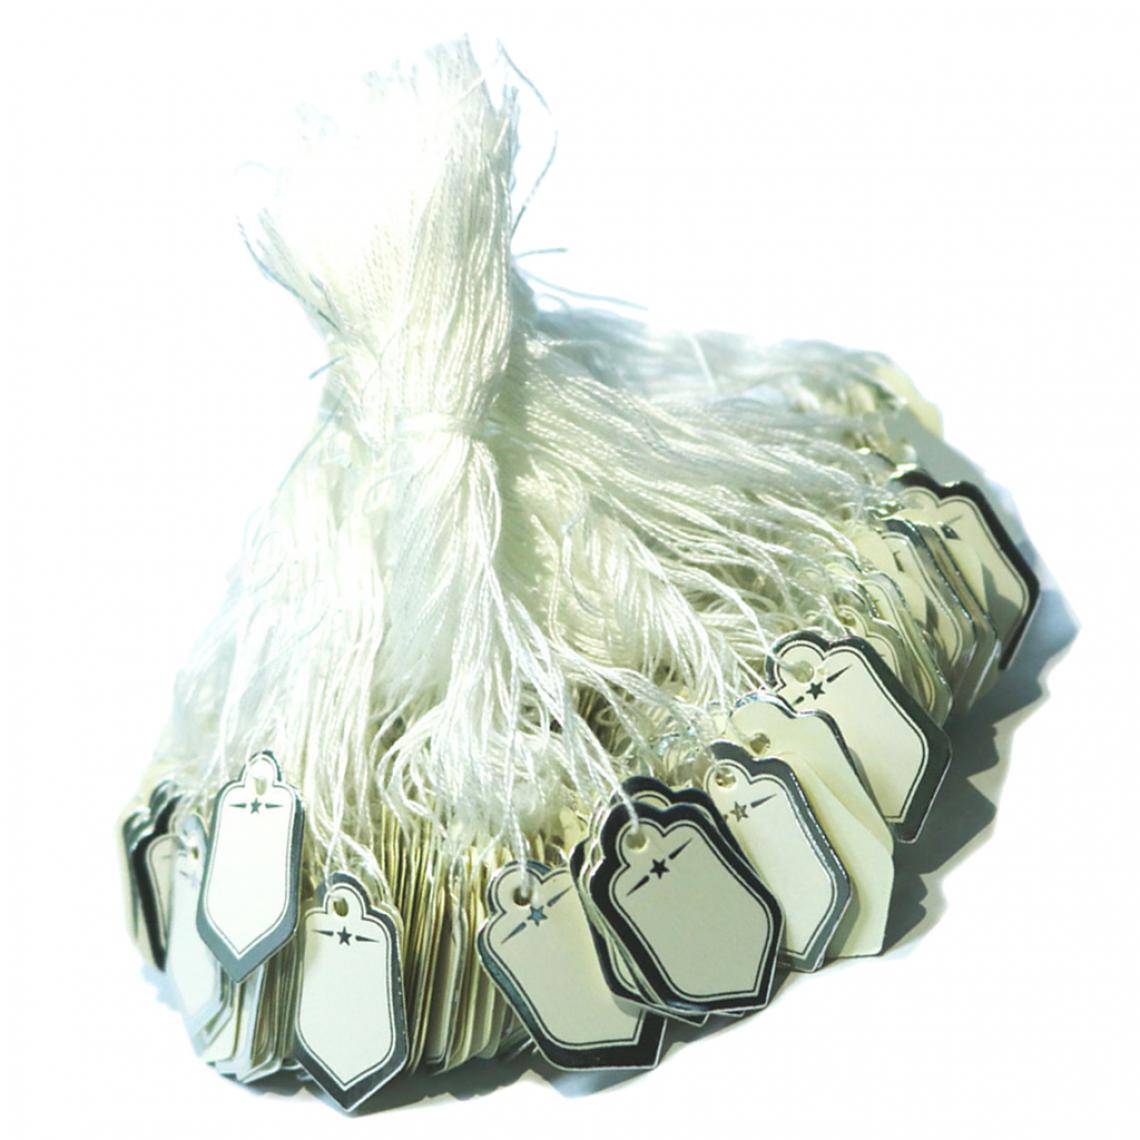 marque generique - 500pcs Étiquette de Bijoux Détail Attaché sur Chaîne Affichage Montre Vêtements Étiquettes de Prix 1 x 0,7 Pouce - Perles